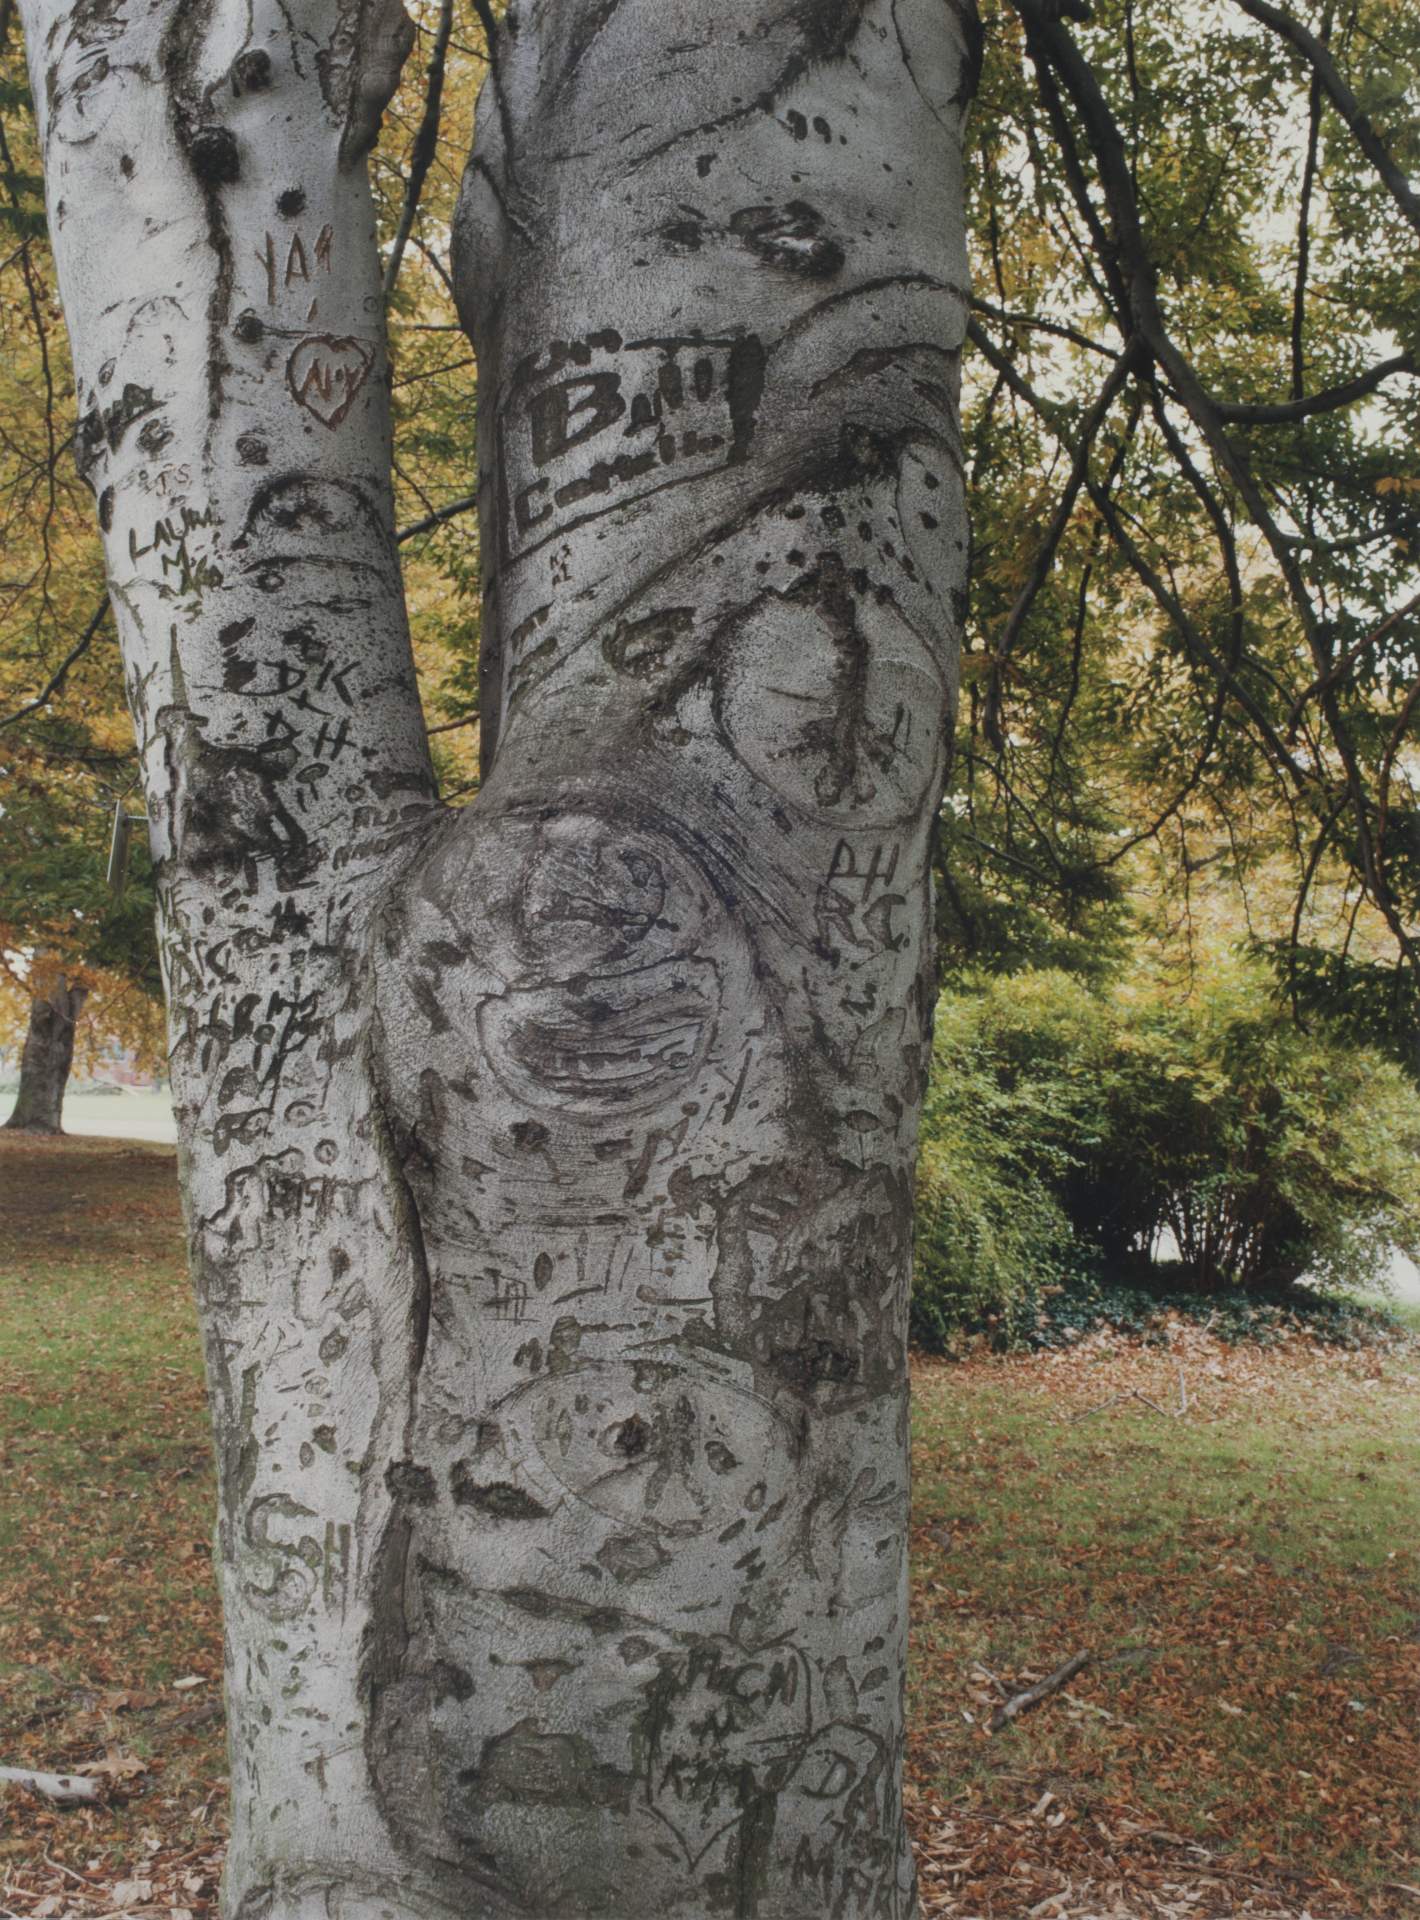 Carvings #4 beech tree, South Park, Buffalo, NY